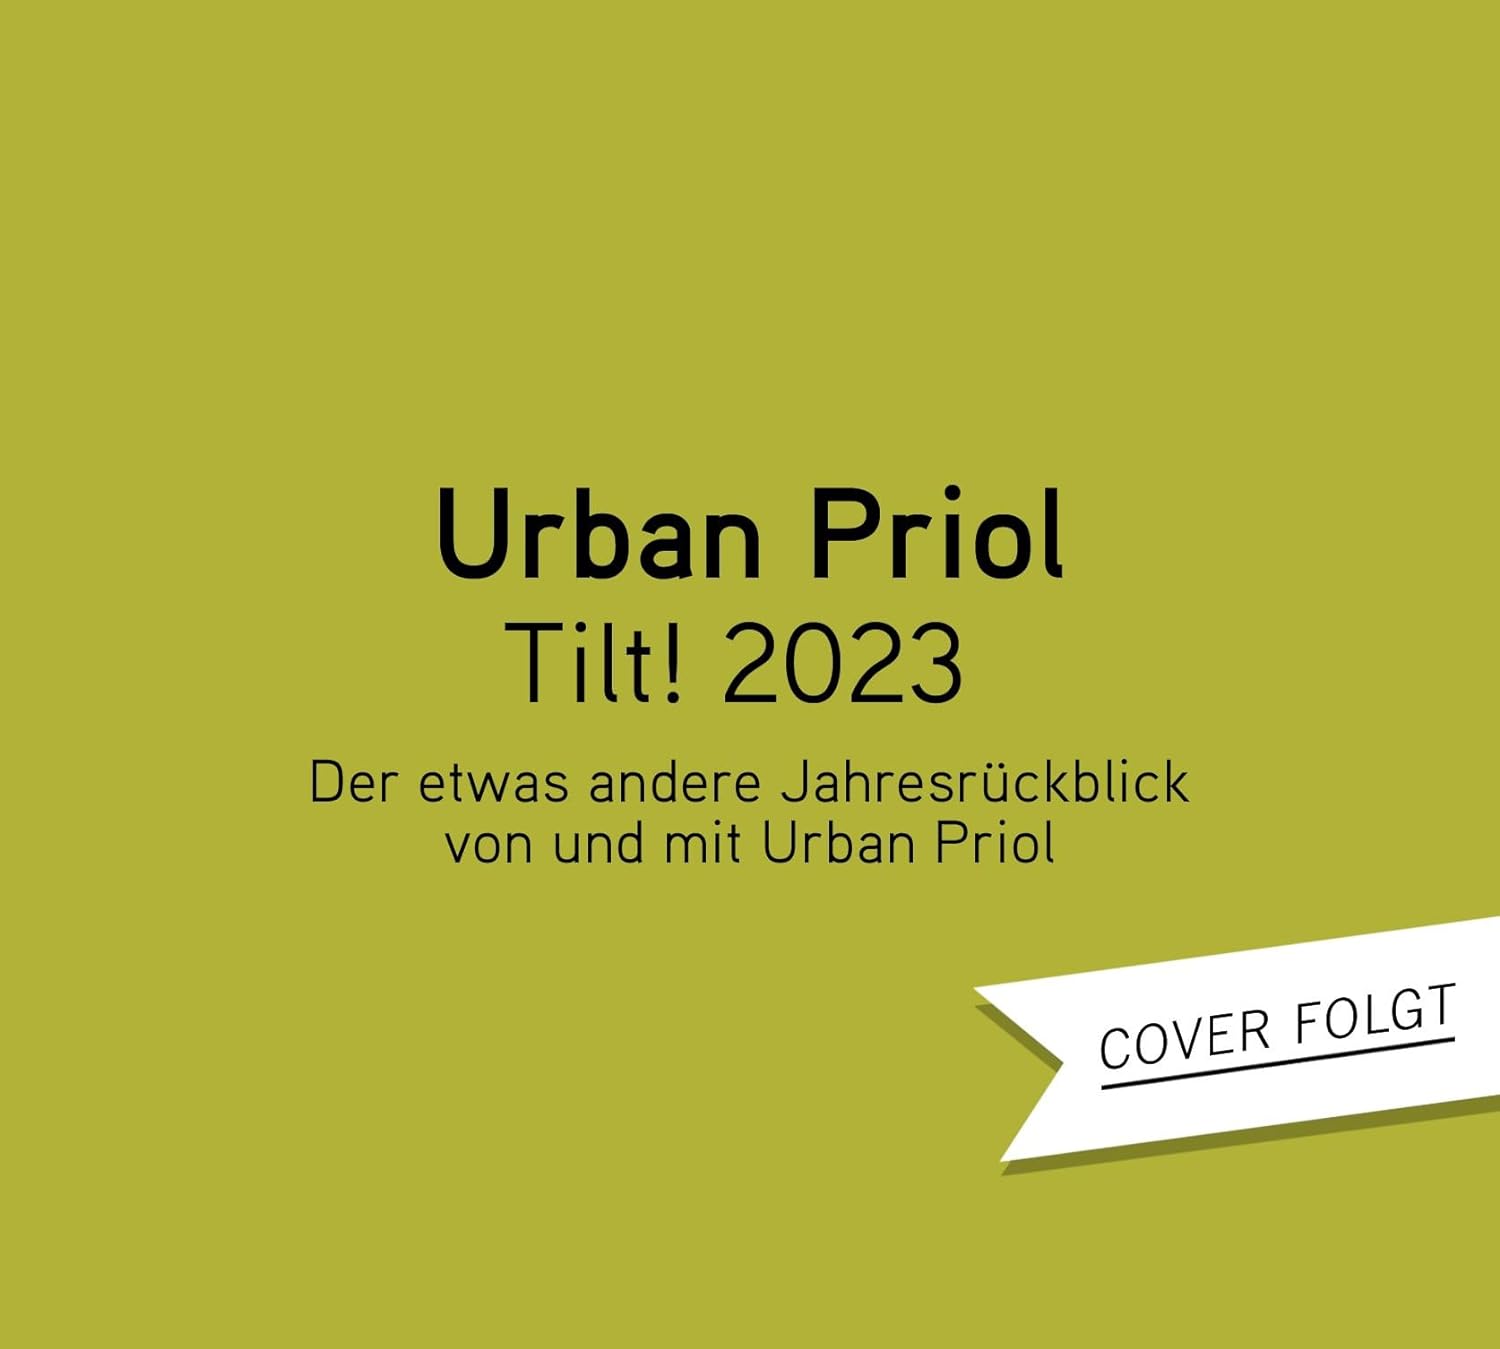 Priol, Urban - TILT! 2023 - Der etwas andere Jahresrückblick von und mit Urban Priol (2CD)